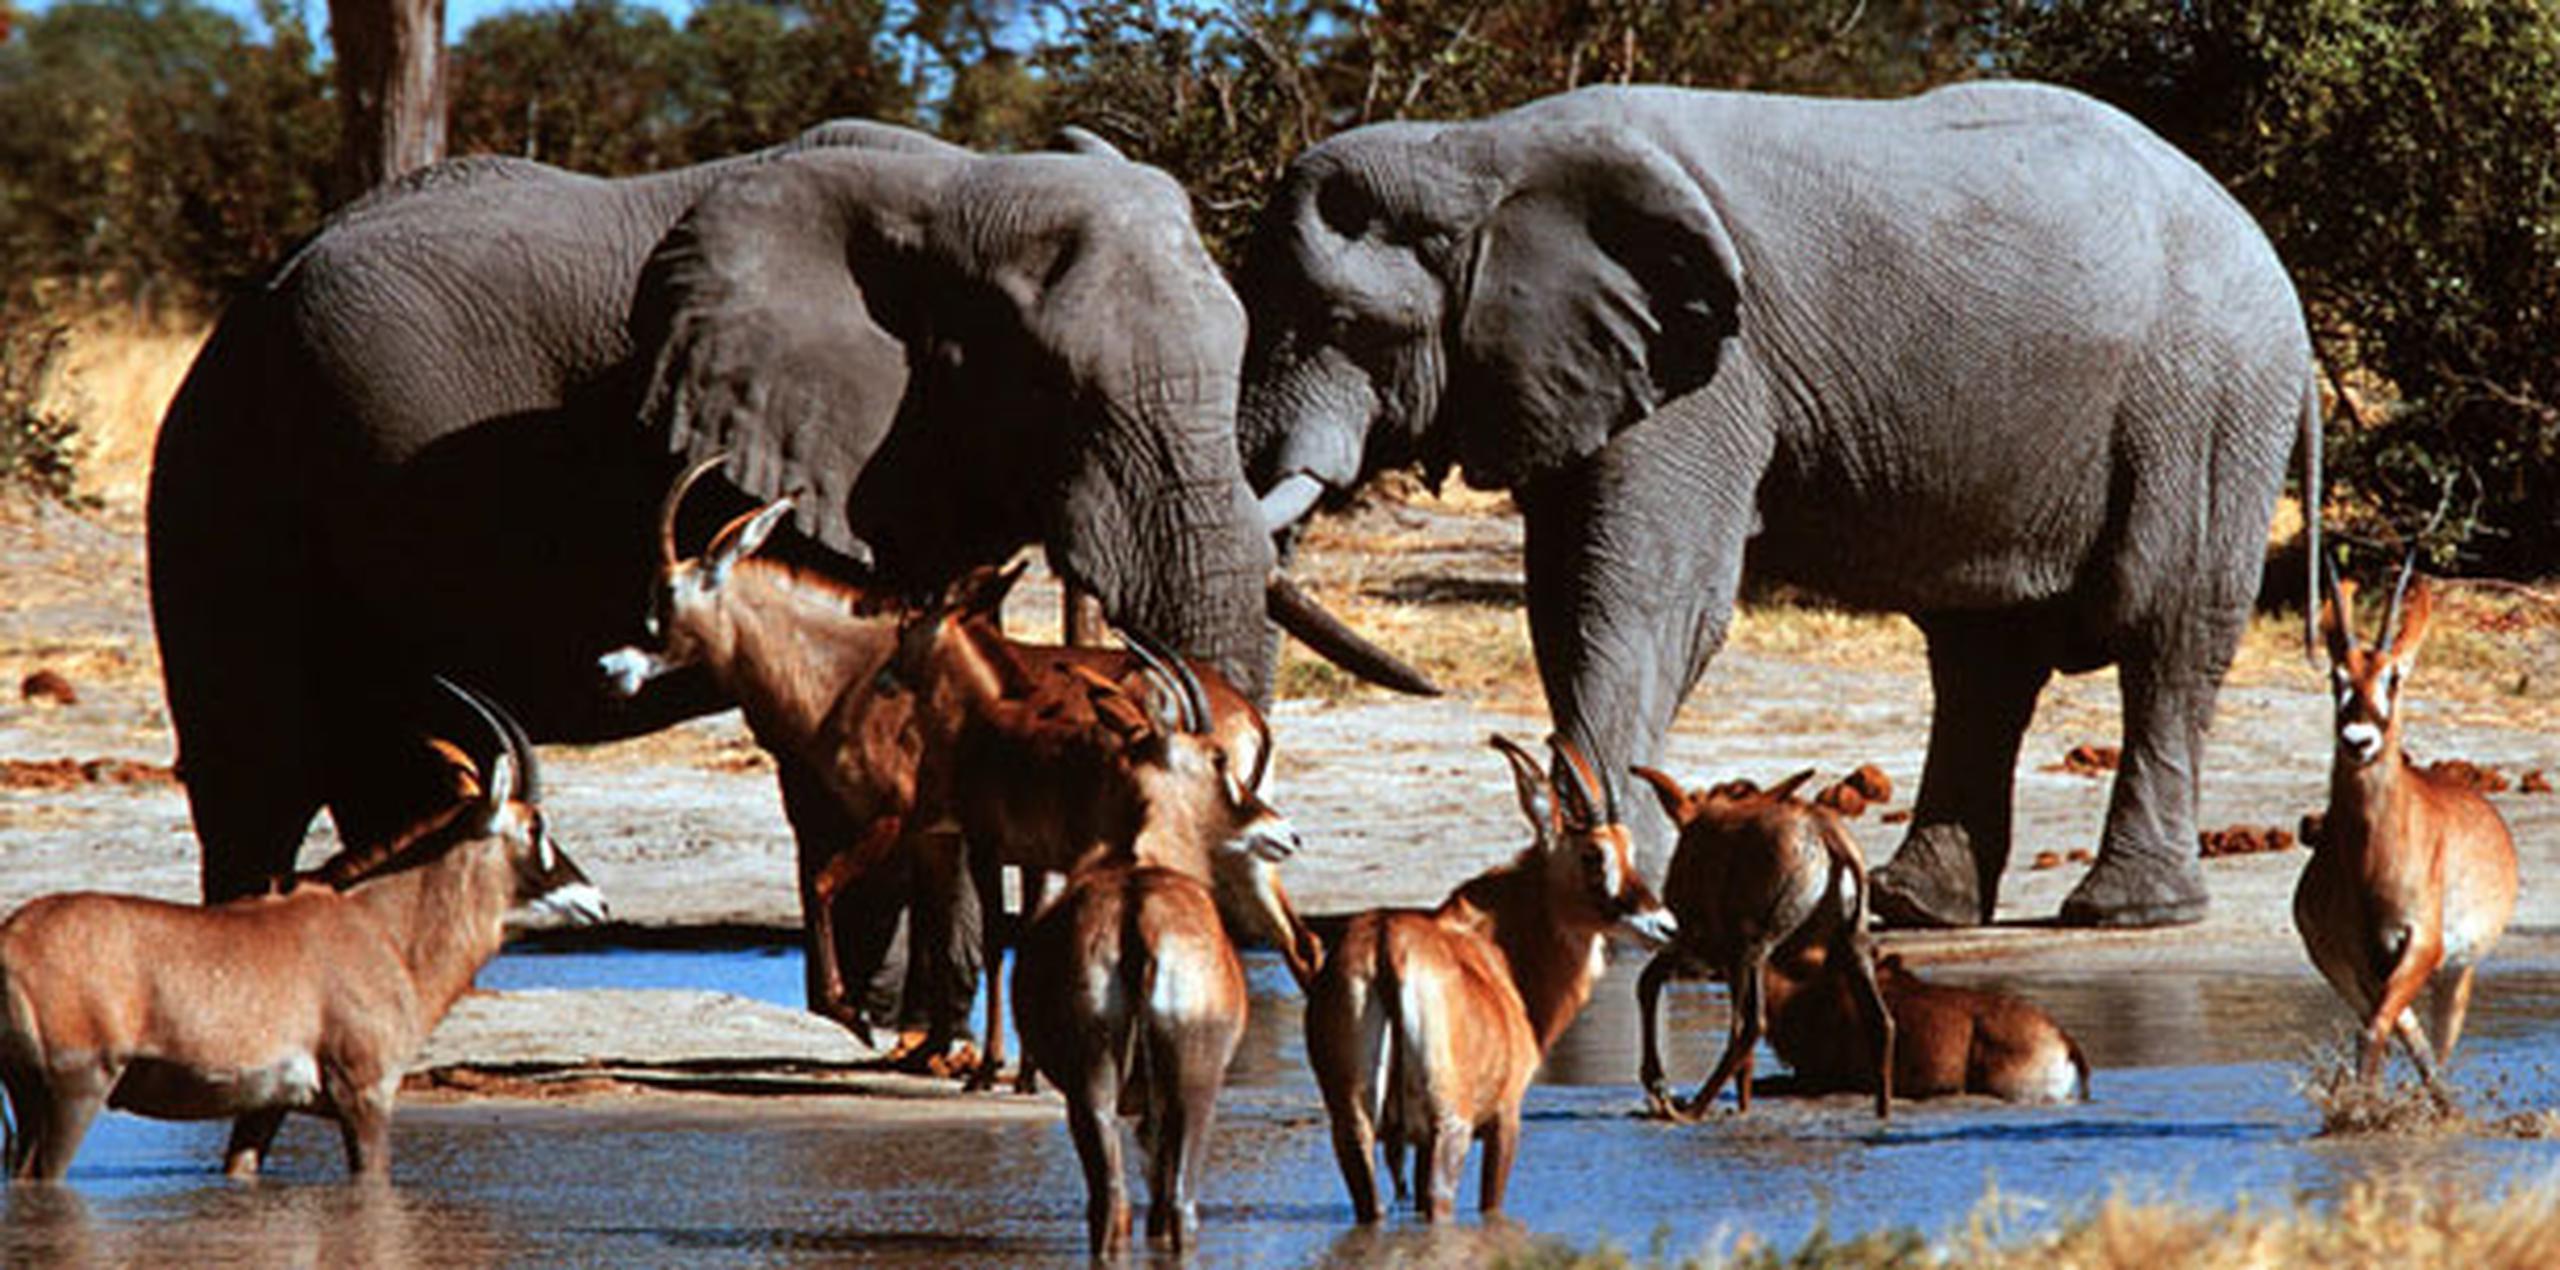 El Parque Nacional Kruger enfrenta desde hace tiempo un grave problema de caza furtiva ilegal para hacerse con cuernos de rinoceronte, los cuales son muy demandados en el mercado asiático. (Archivo)